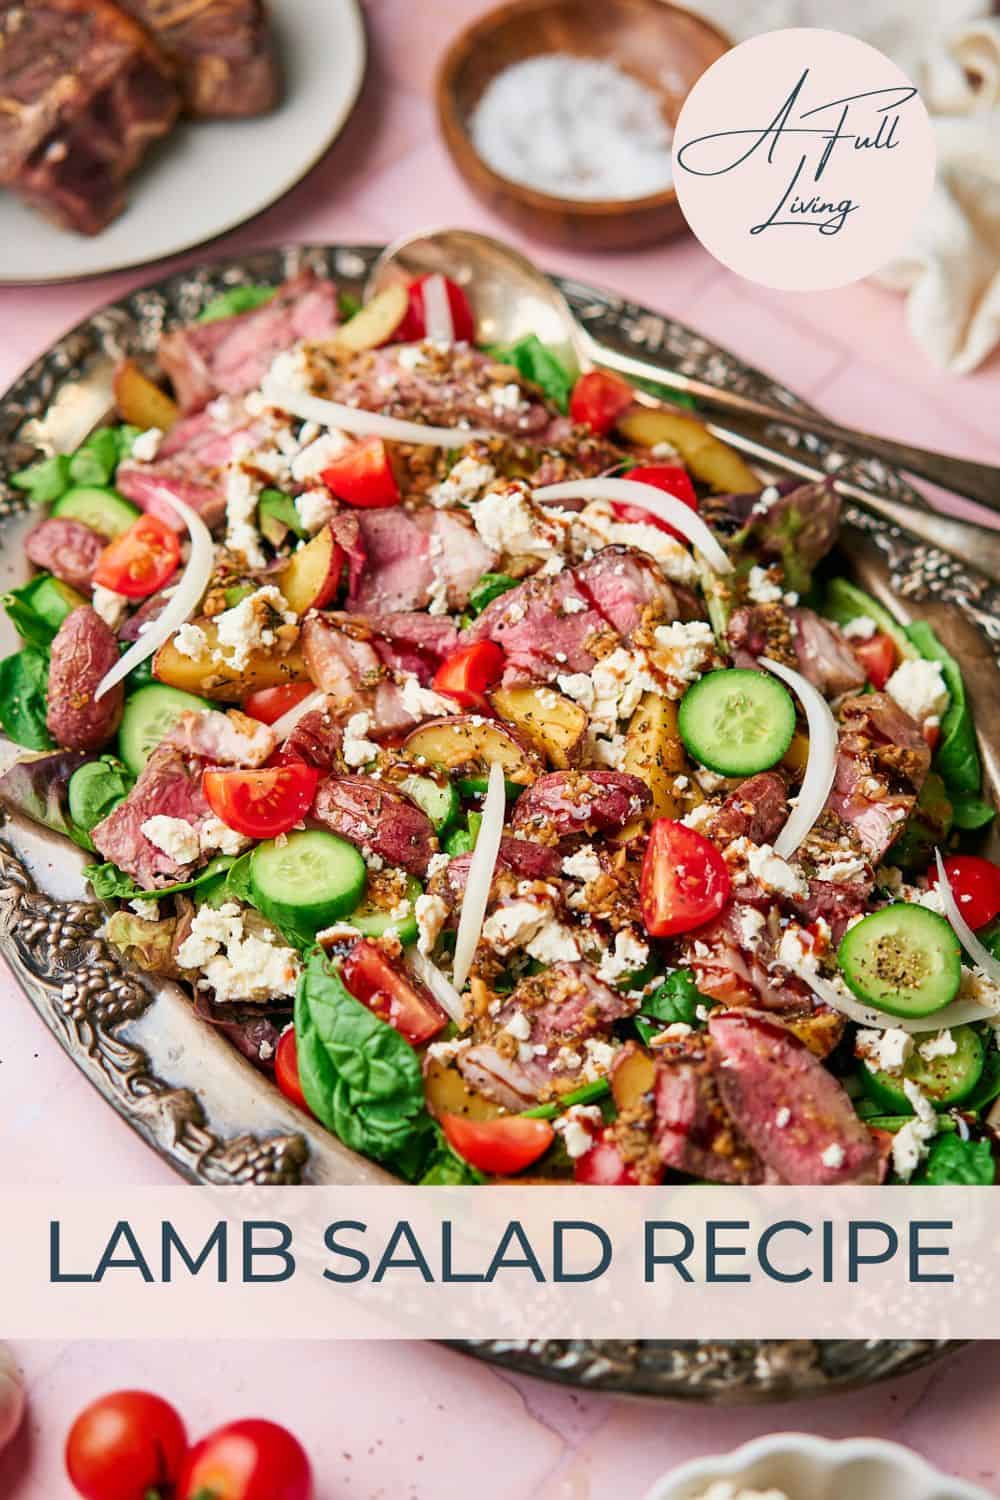 Lamb salad recipe.